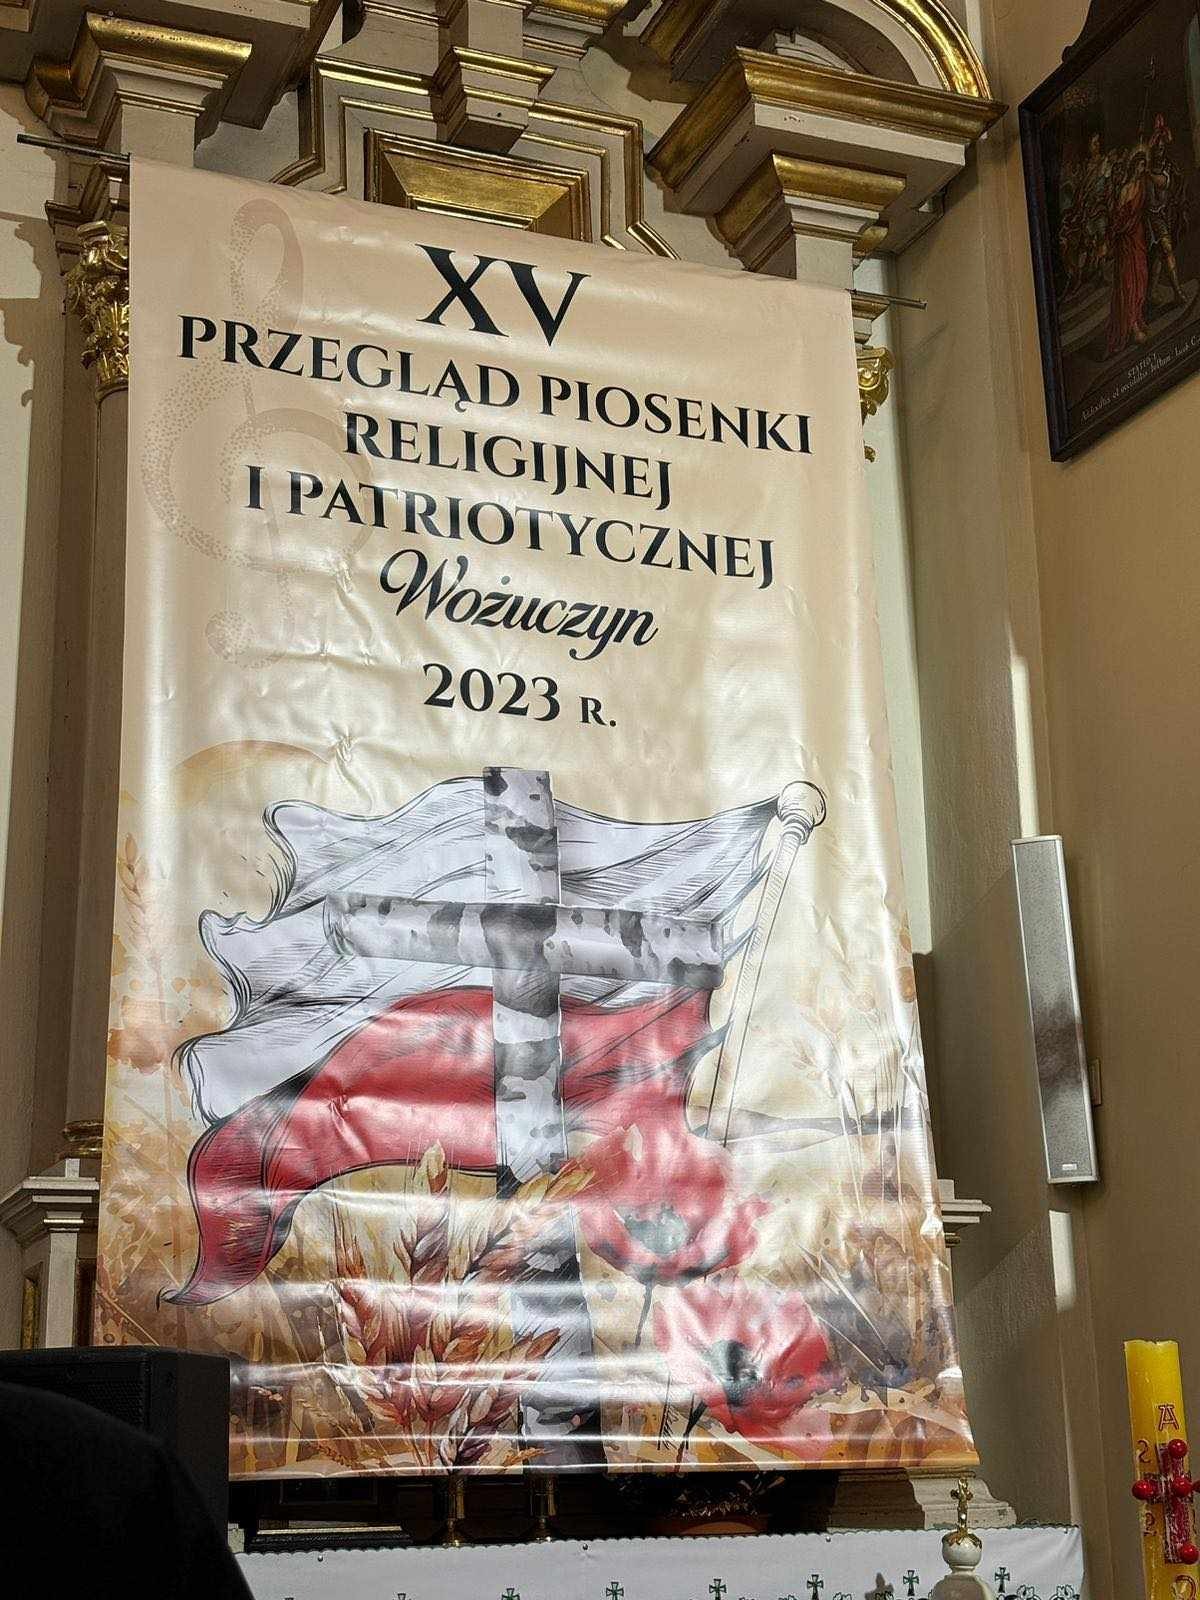 XV Przegląd Piosenki Religijnej i Patriotycznej w Wożuczynie - Obrazek 3